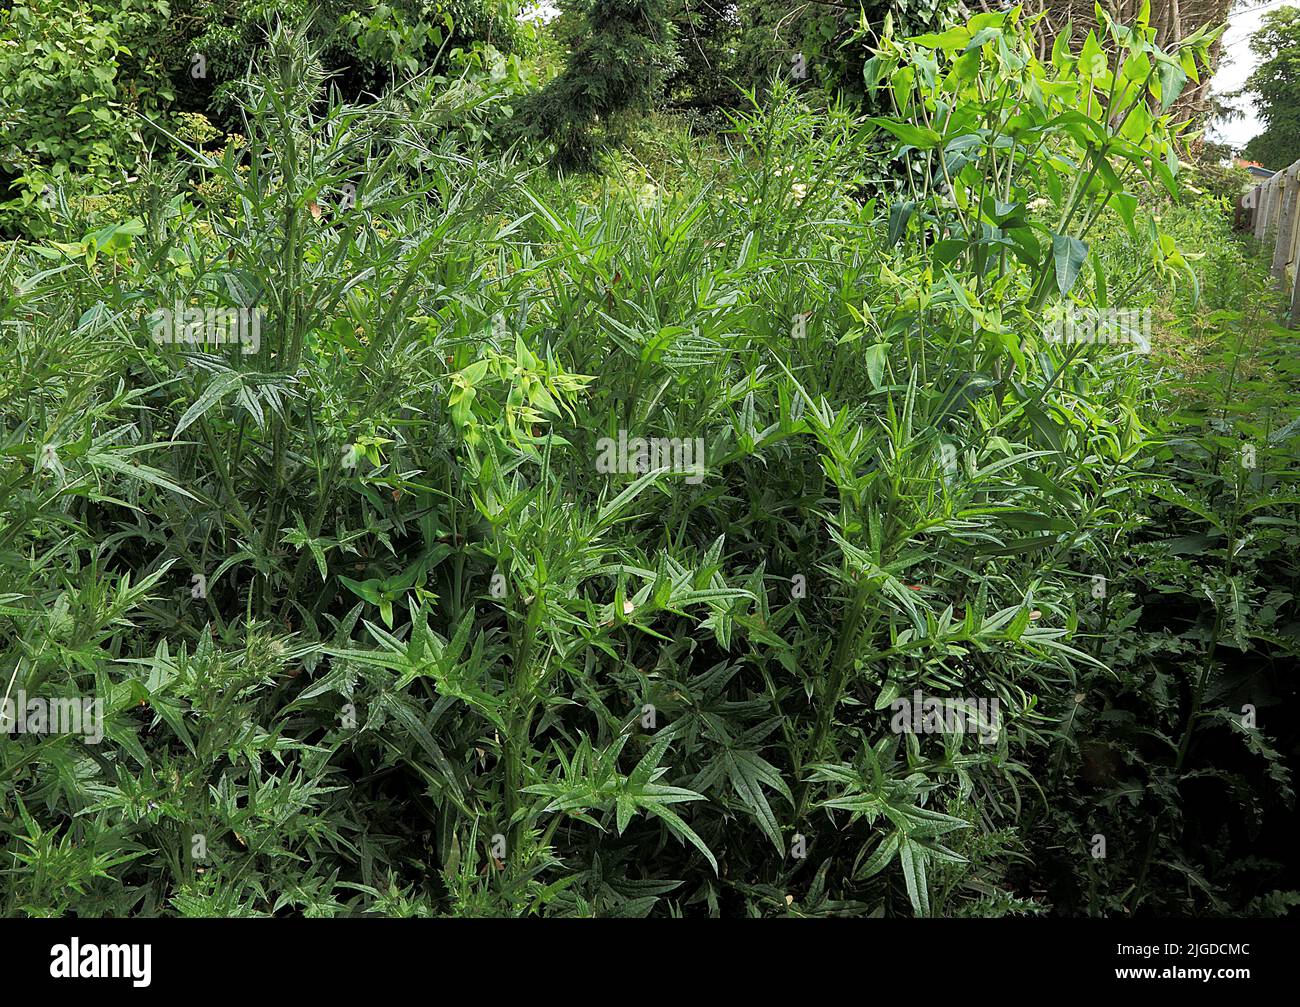 Overgrown garden, Thistles and Weeds in Garden Stock Photo